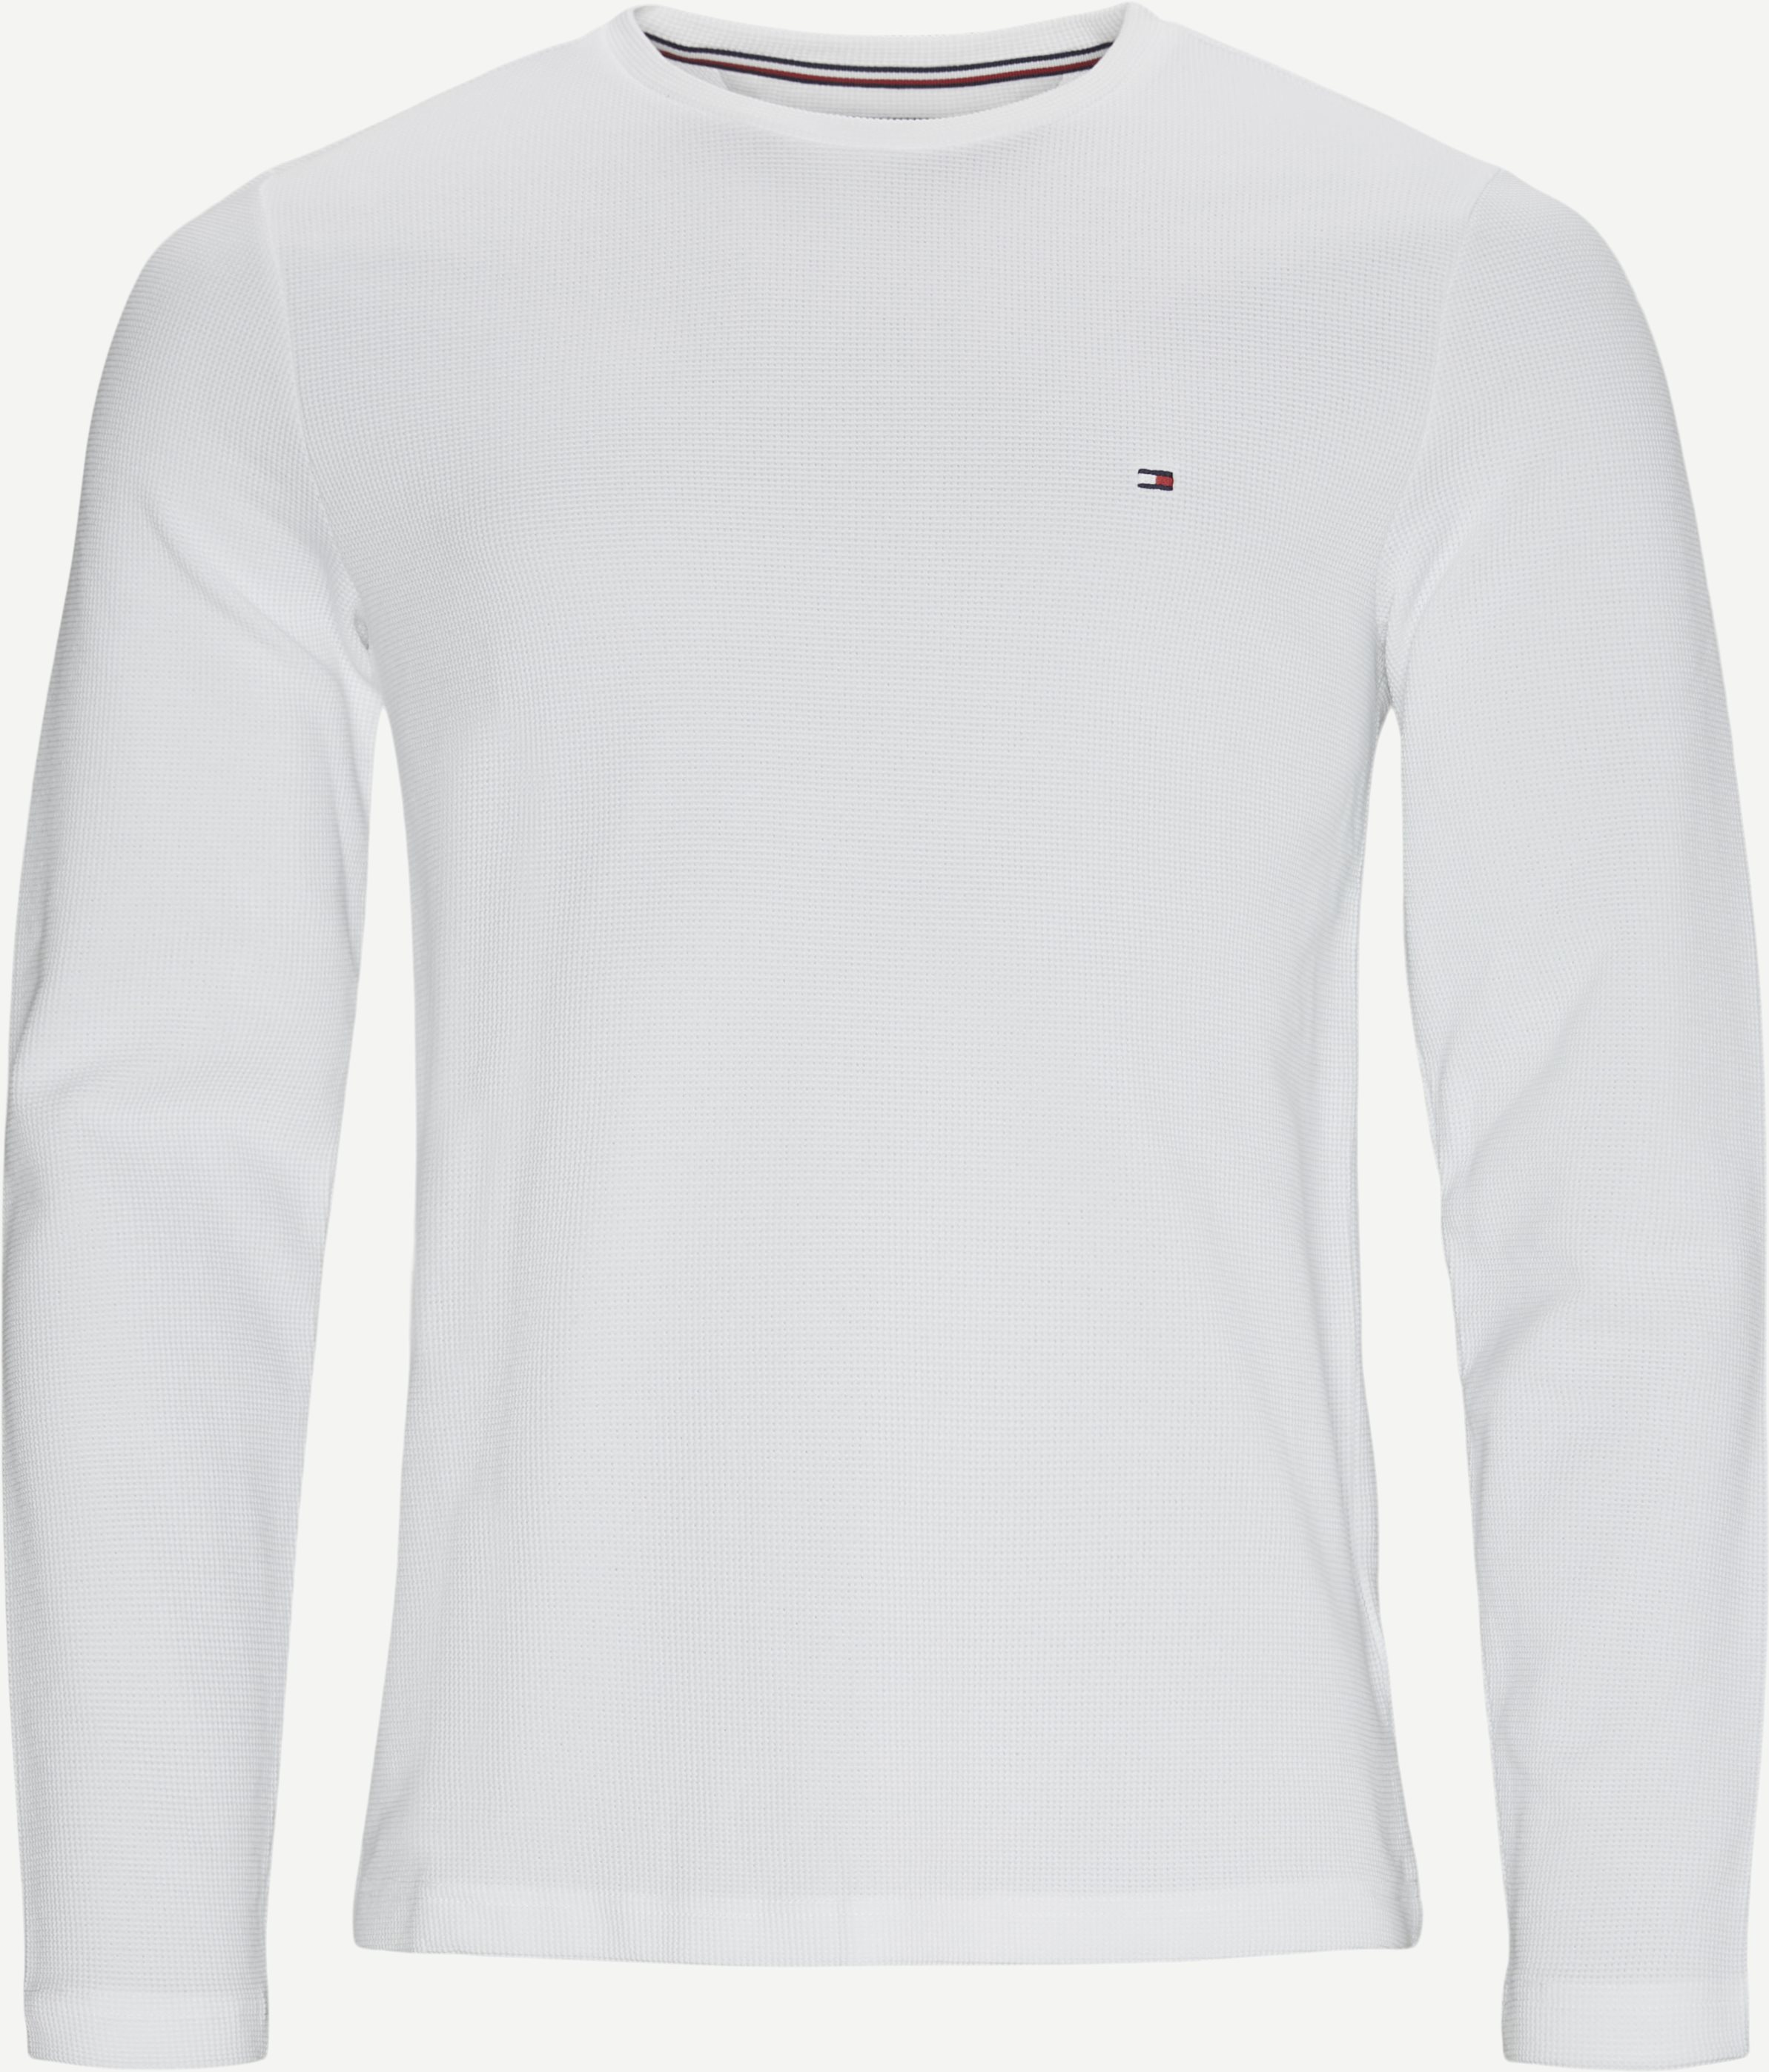 Waffel-Langarm-T-Shirt - T-Shirts - Regular fit - Weiß